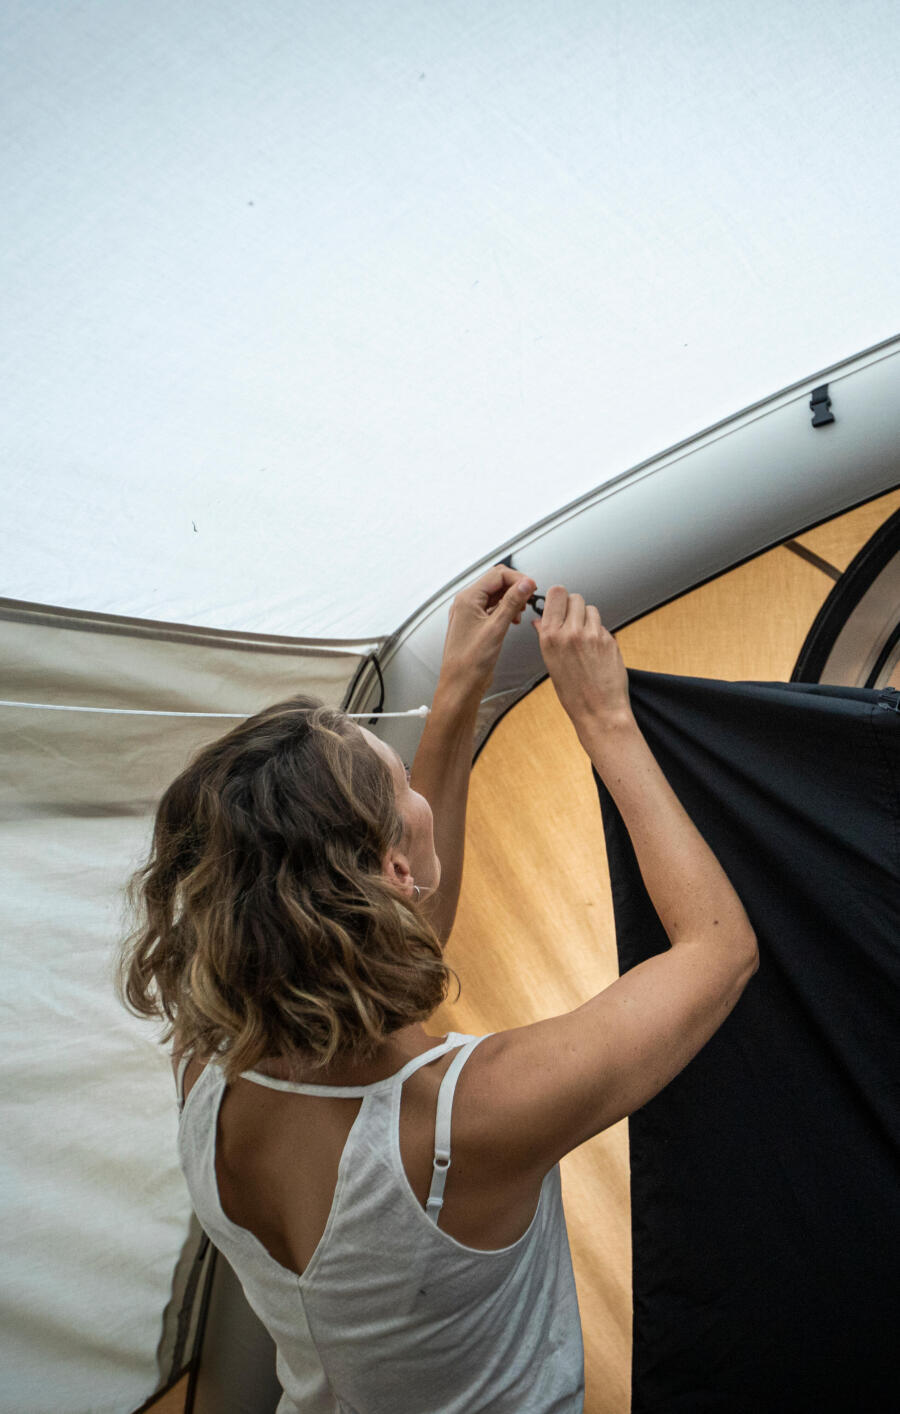 entretenir une tente gonflable de camping air seconds